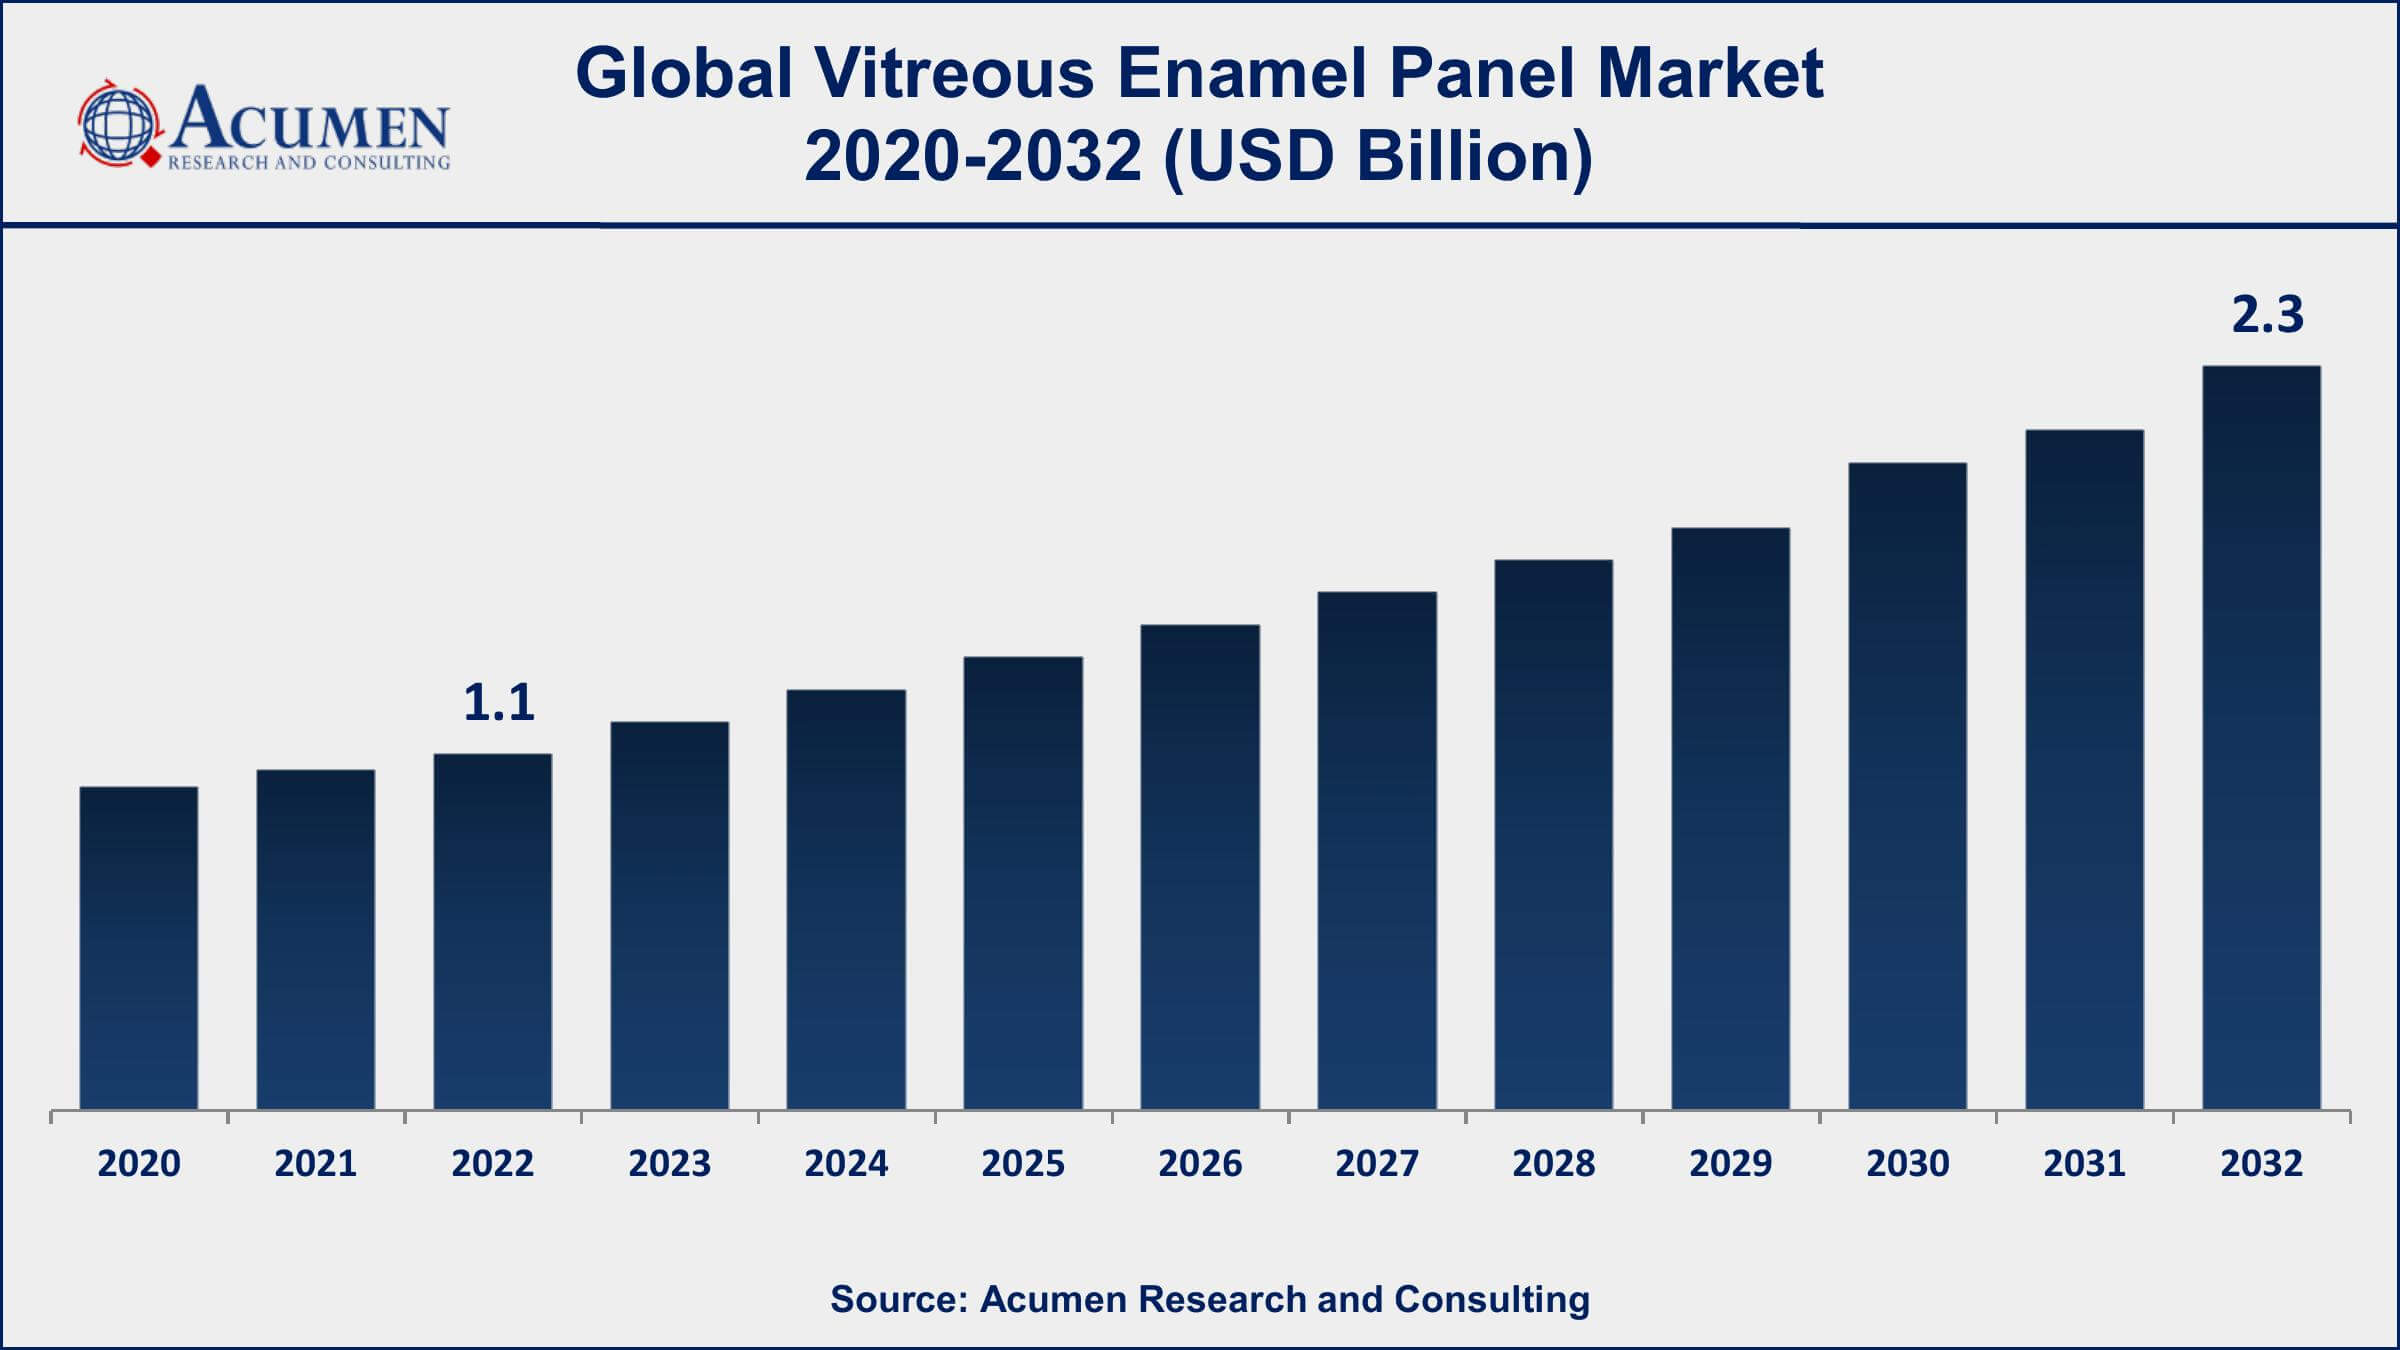 Vitreous Enamel Panel Market Dynamics